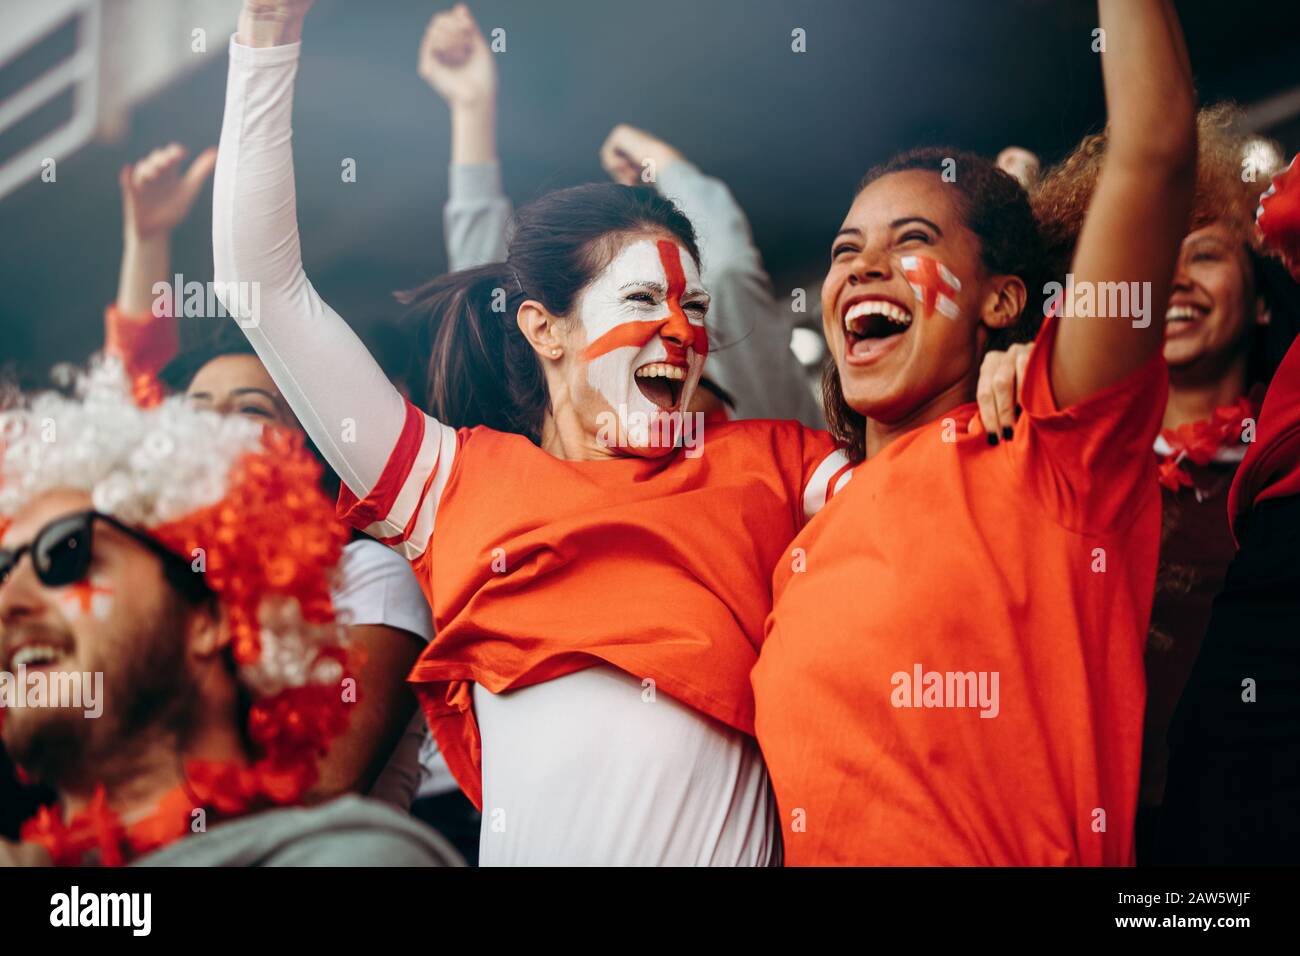 Le fans di calcio femminili nello stadio celebrano la vittoria. Spettatori inglesi che si godono dopo una vittoria di campionato di calcio in stand Foto Stock